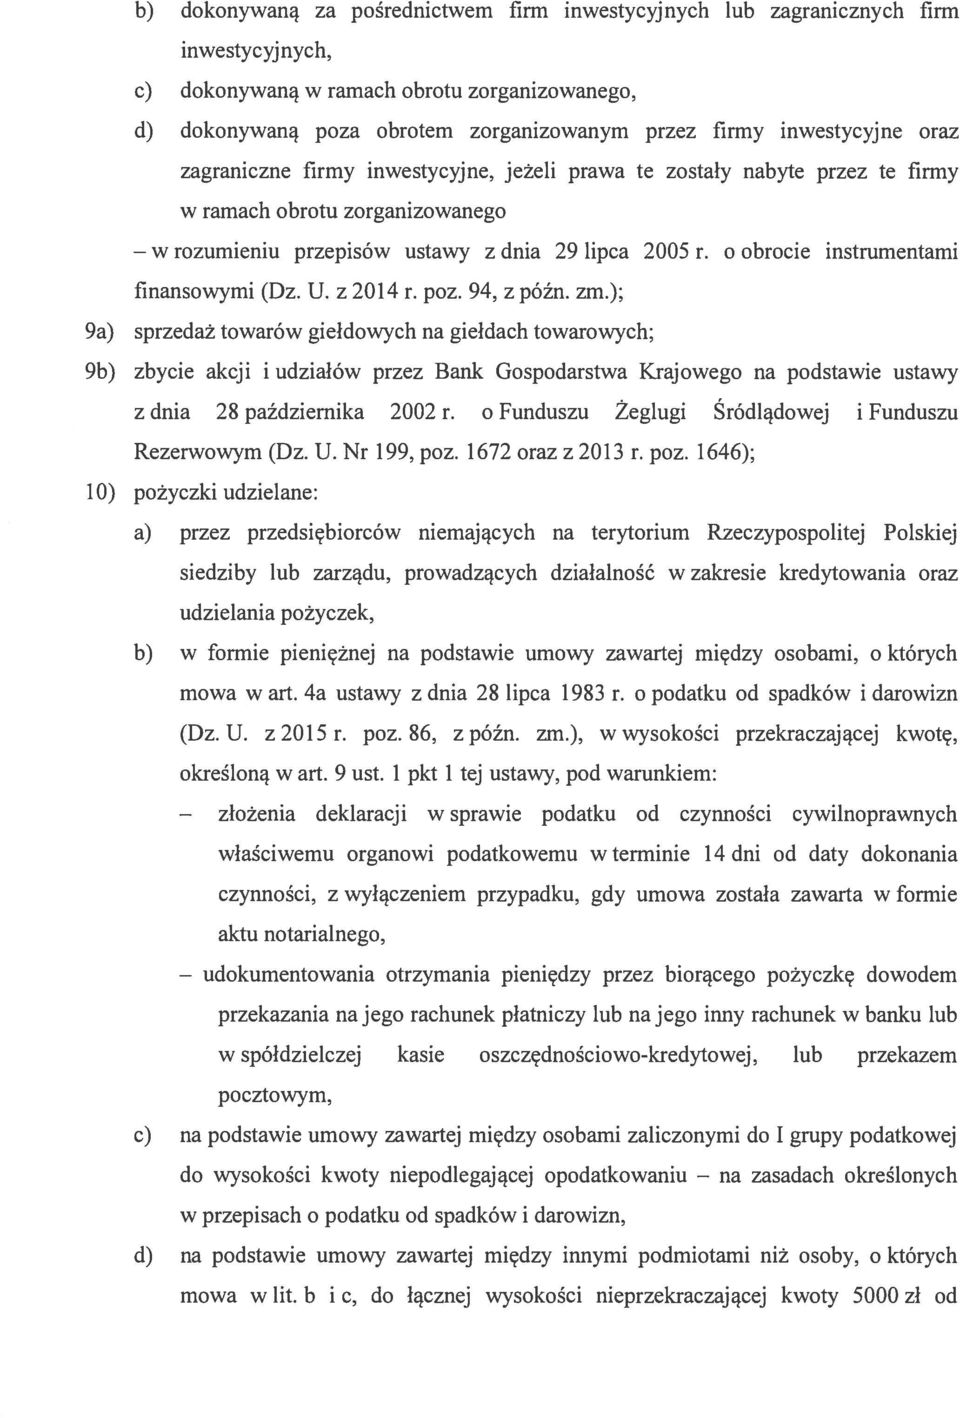 2005 r. o obrocie instrumentami flnansowymi (Dz. U. z 2014 r. poz. 94, z późn. zm.